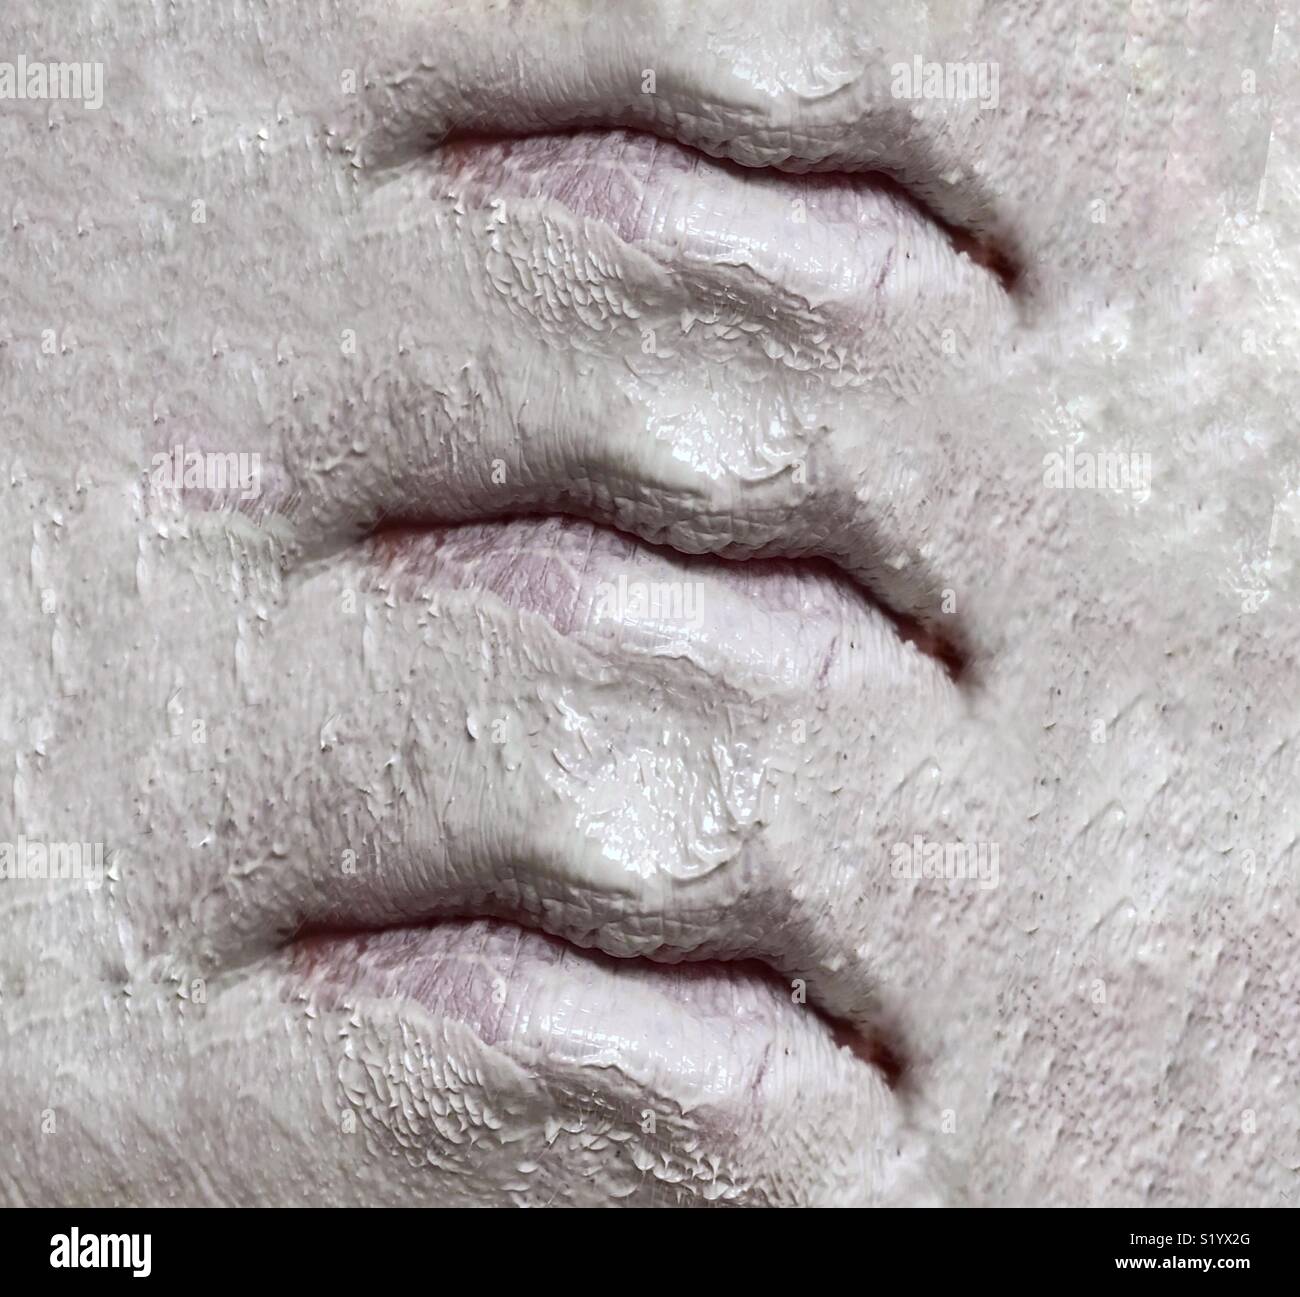 Une image abstraite de trois ensembles de lèvres sur un visage recouvert d'un masque de boue argile blanche Banque D'Images